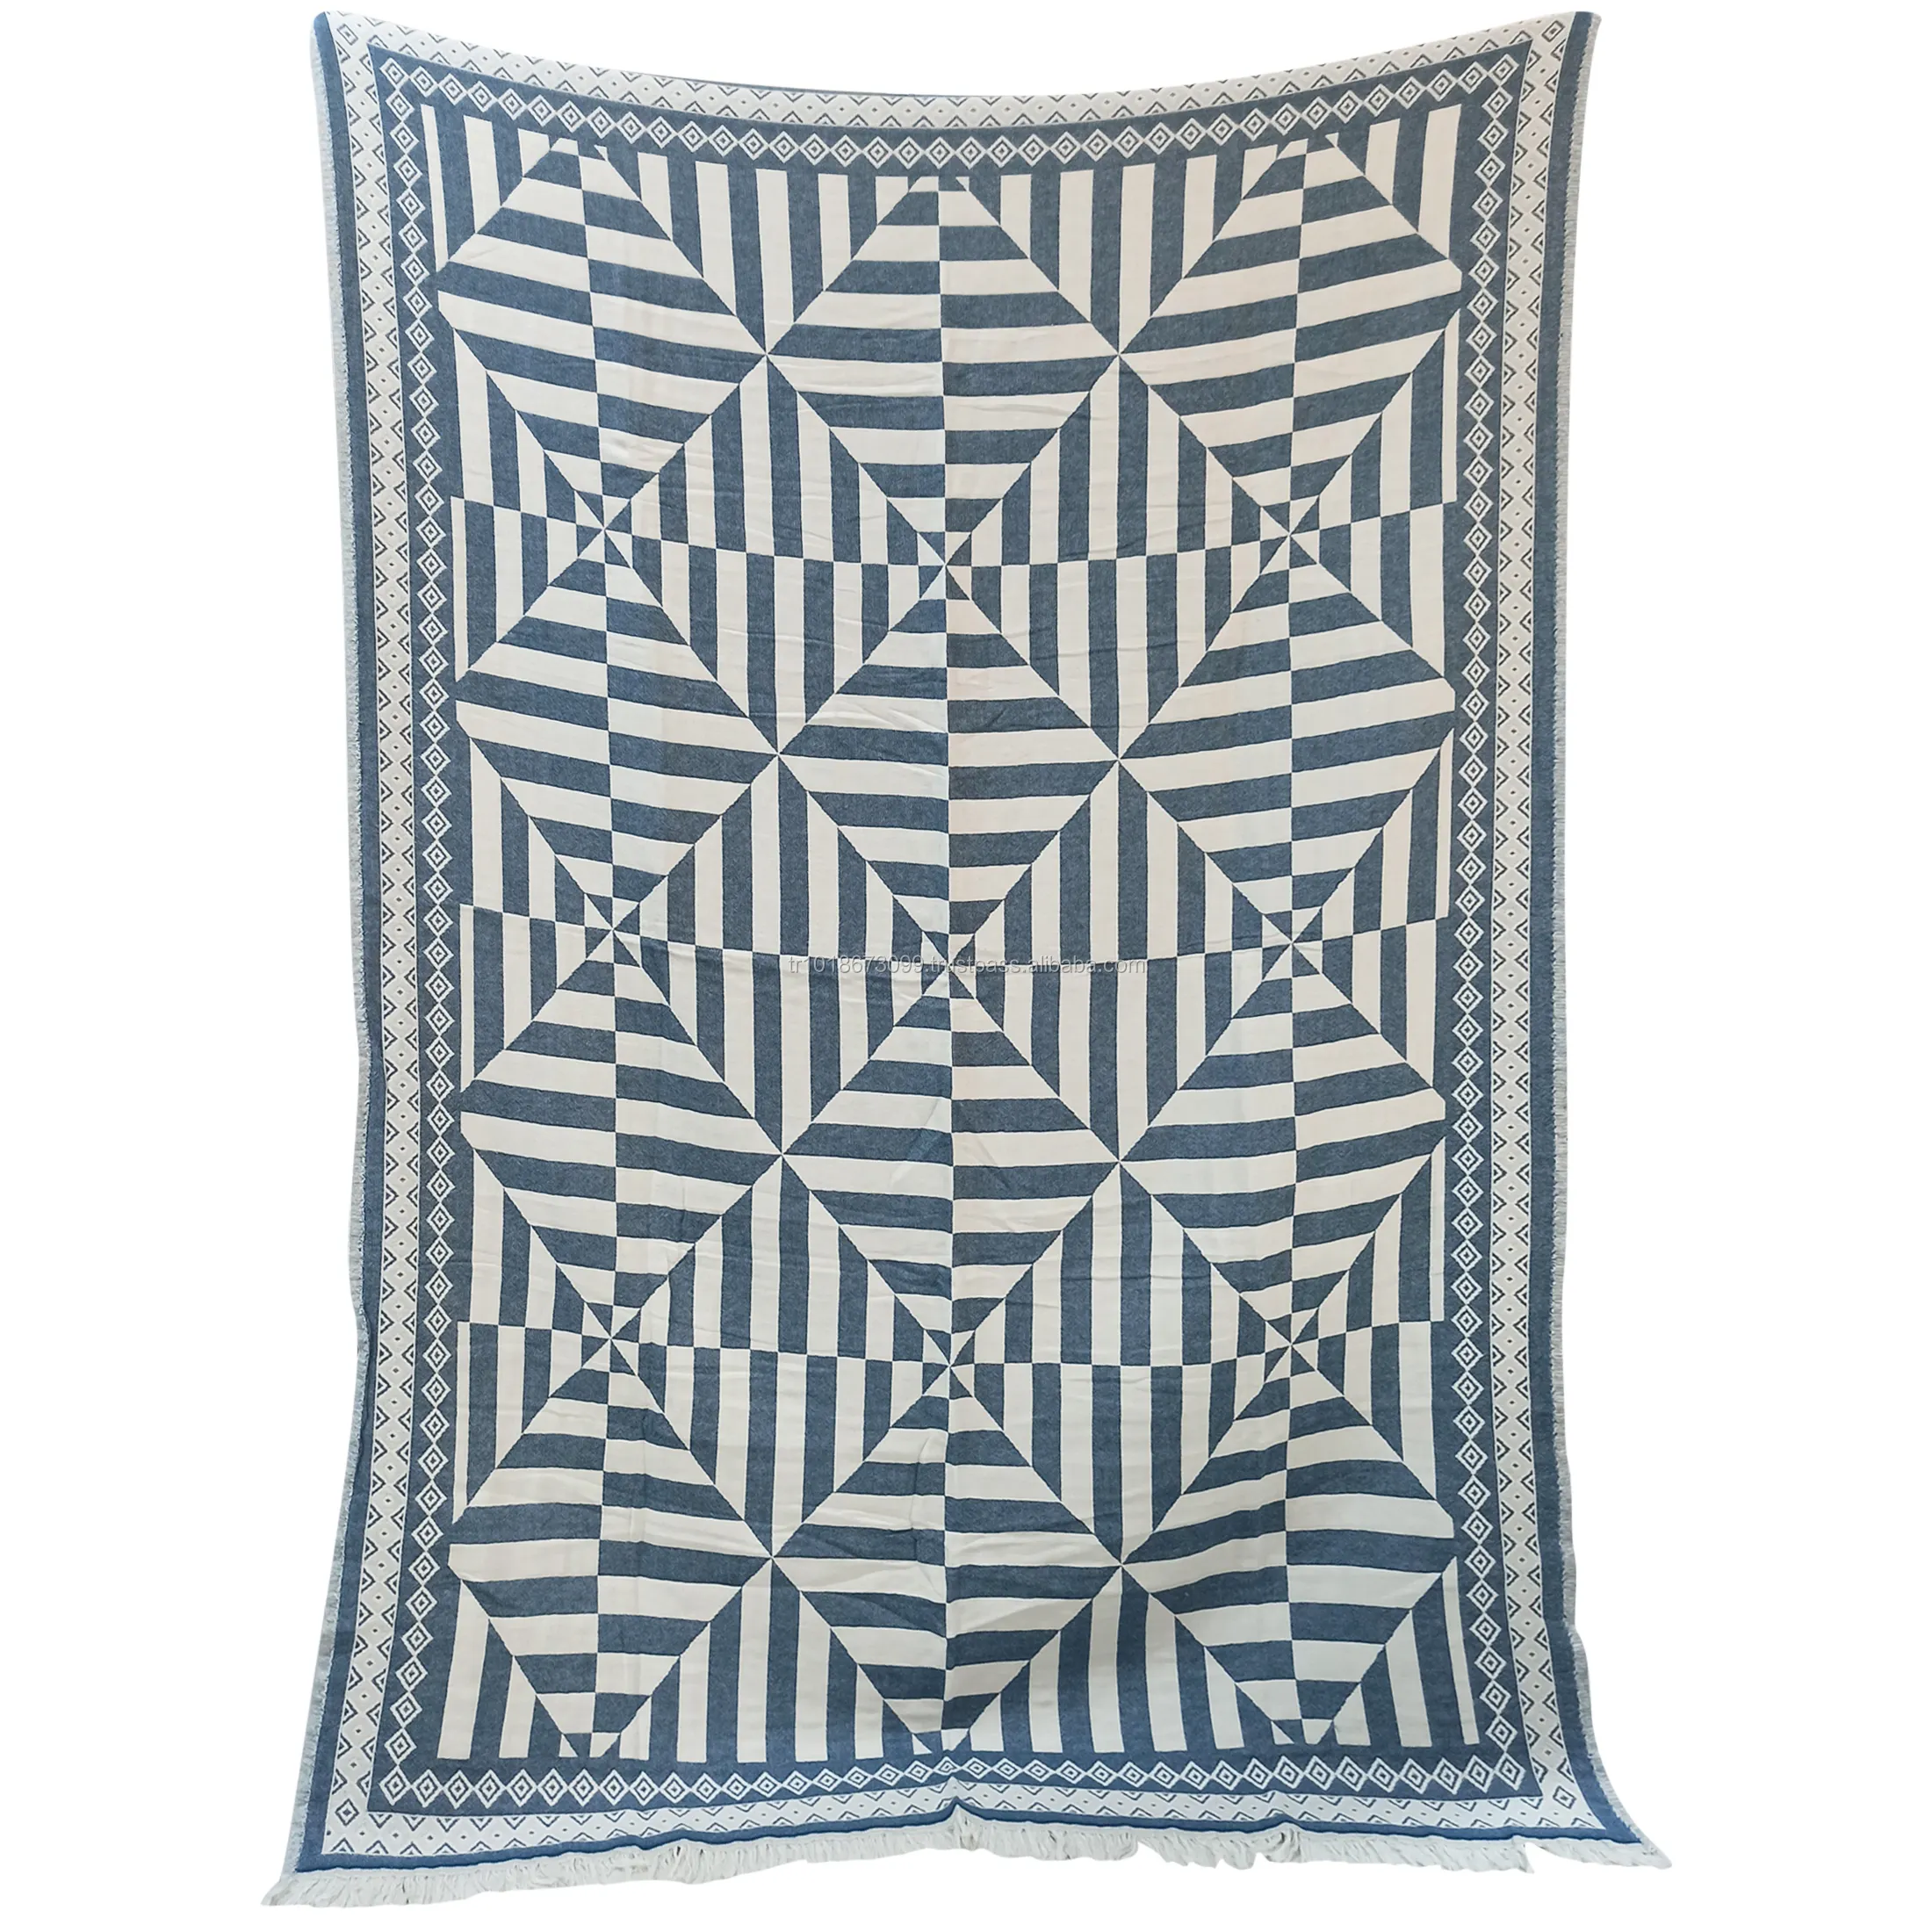 Couverture en coton au Design géométrique, plaid bleu marine très large, Collection Jacquard, 200x240 cm, 78x95 pouces